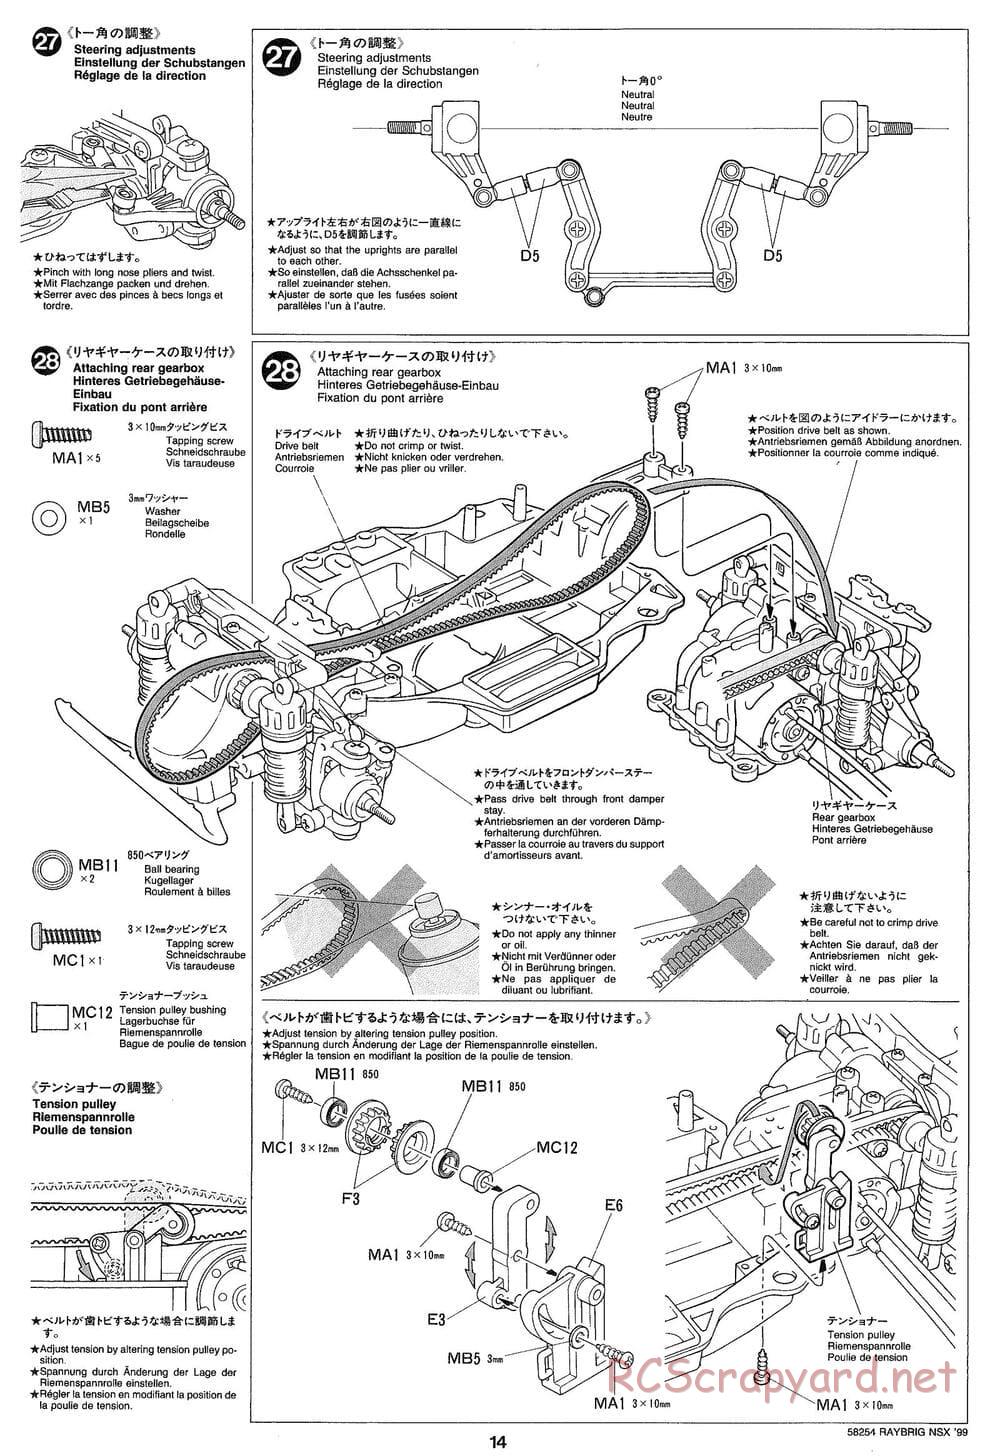 Tamiya - Raybrig NSX 99 - TA-03R Chassis - Manual - Page 14